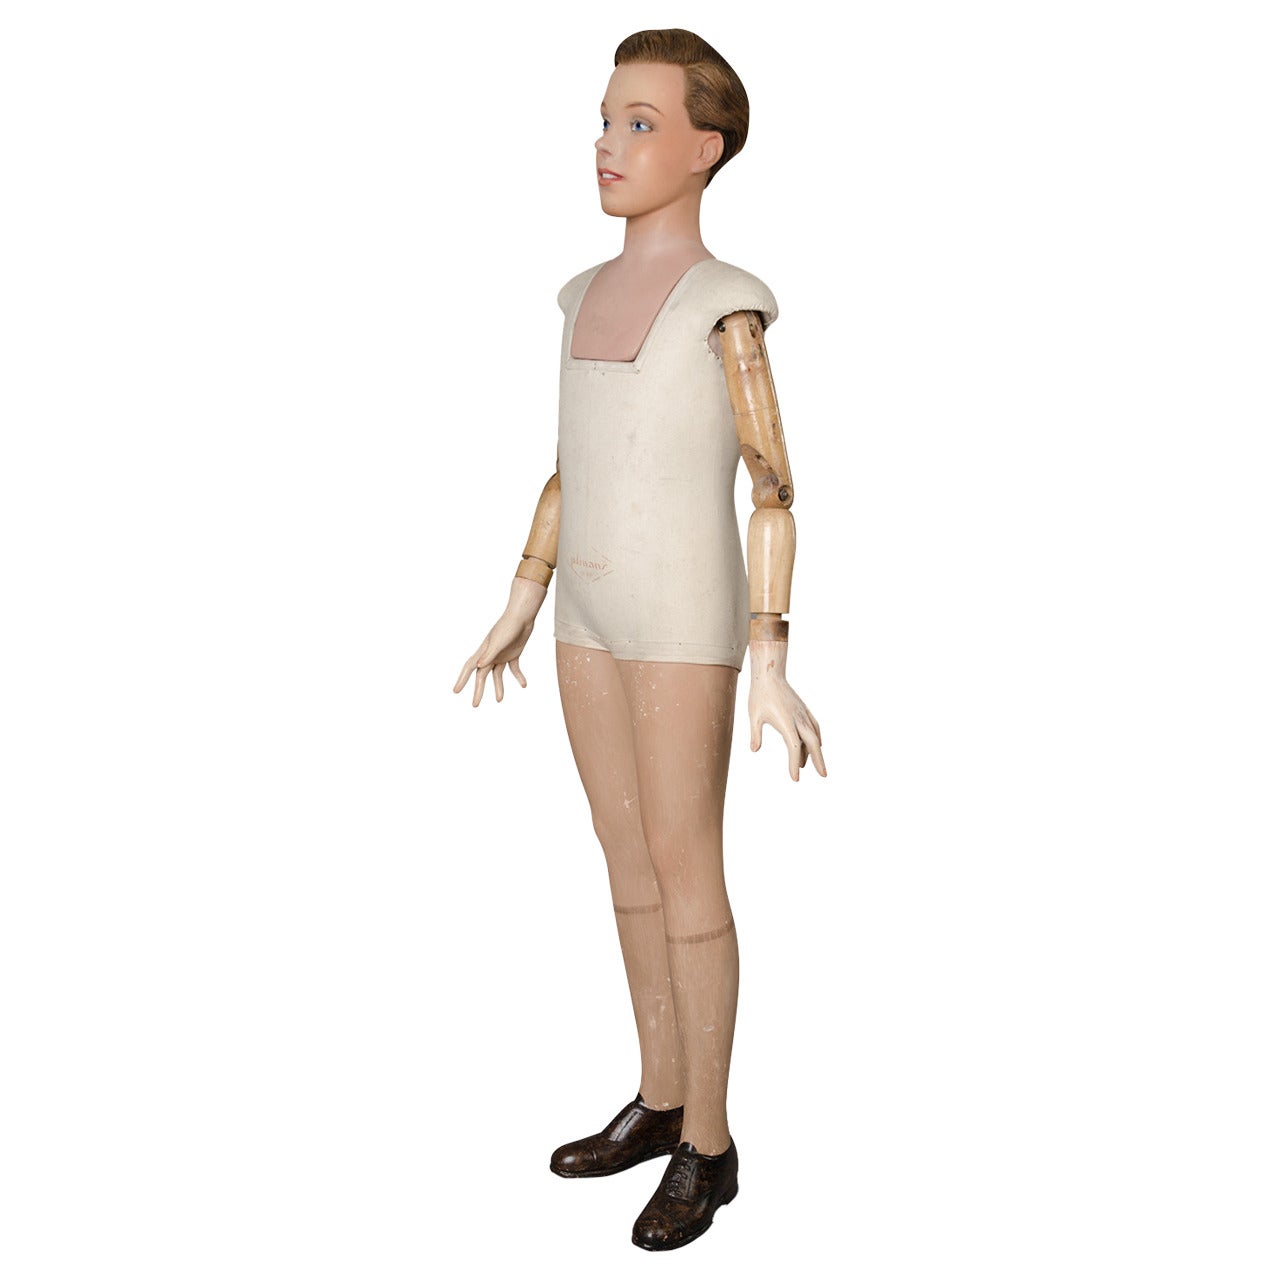 Child Model Mannequin, circa 1930